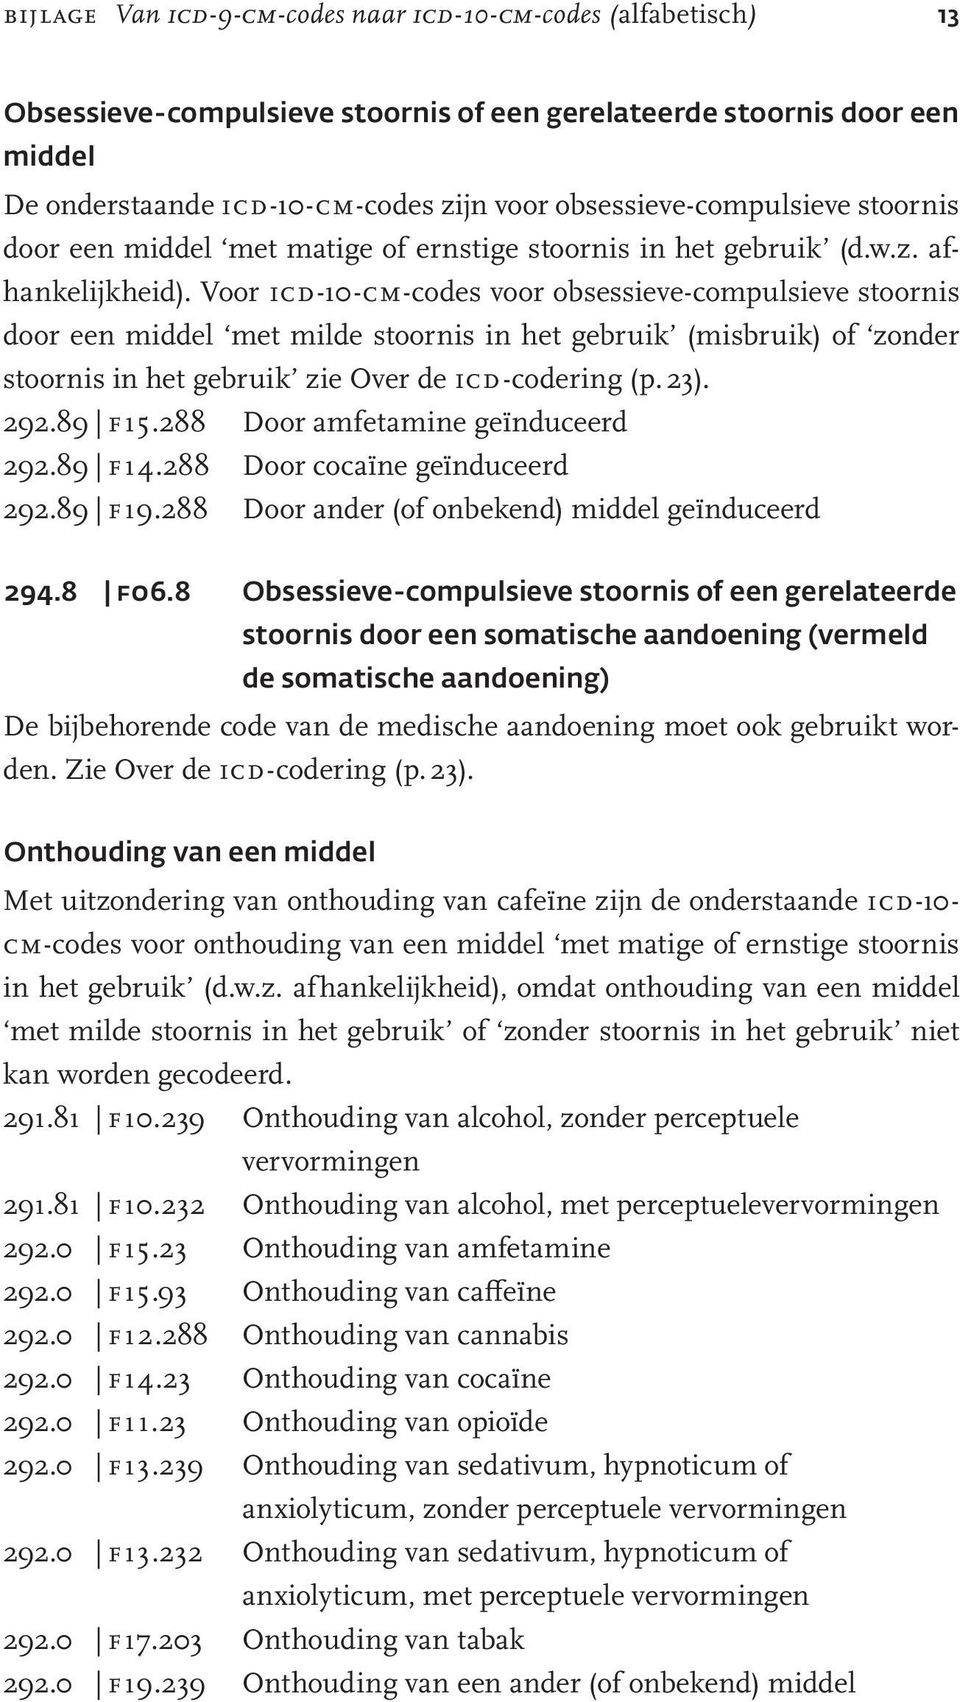 Voor icd-10-cm-codes voor obsessieve-compulsieve stoornis door een middel met milde stoornis in het gebruik (misbruik) of zonder stoornis in het gebruik zie Over de icd-codering (p. 23). 292.89 f15.